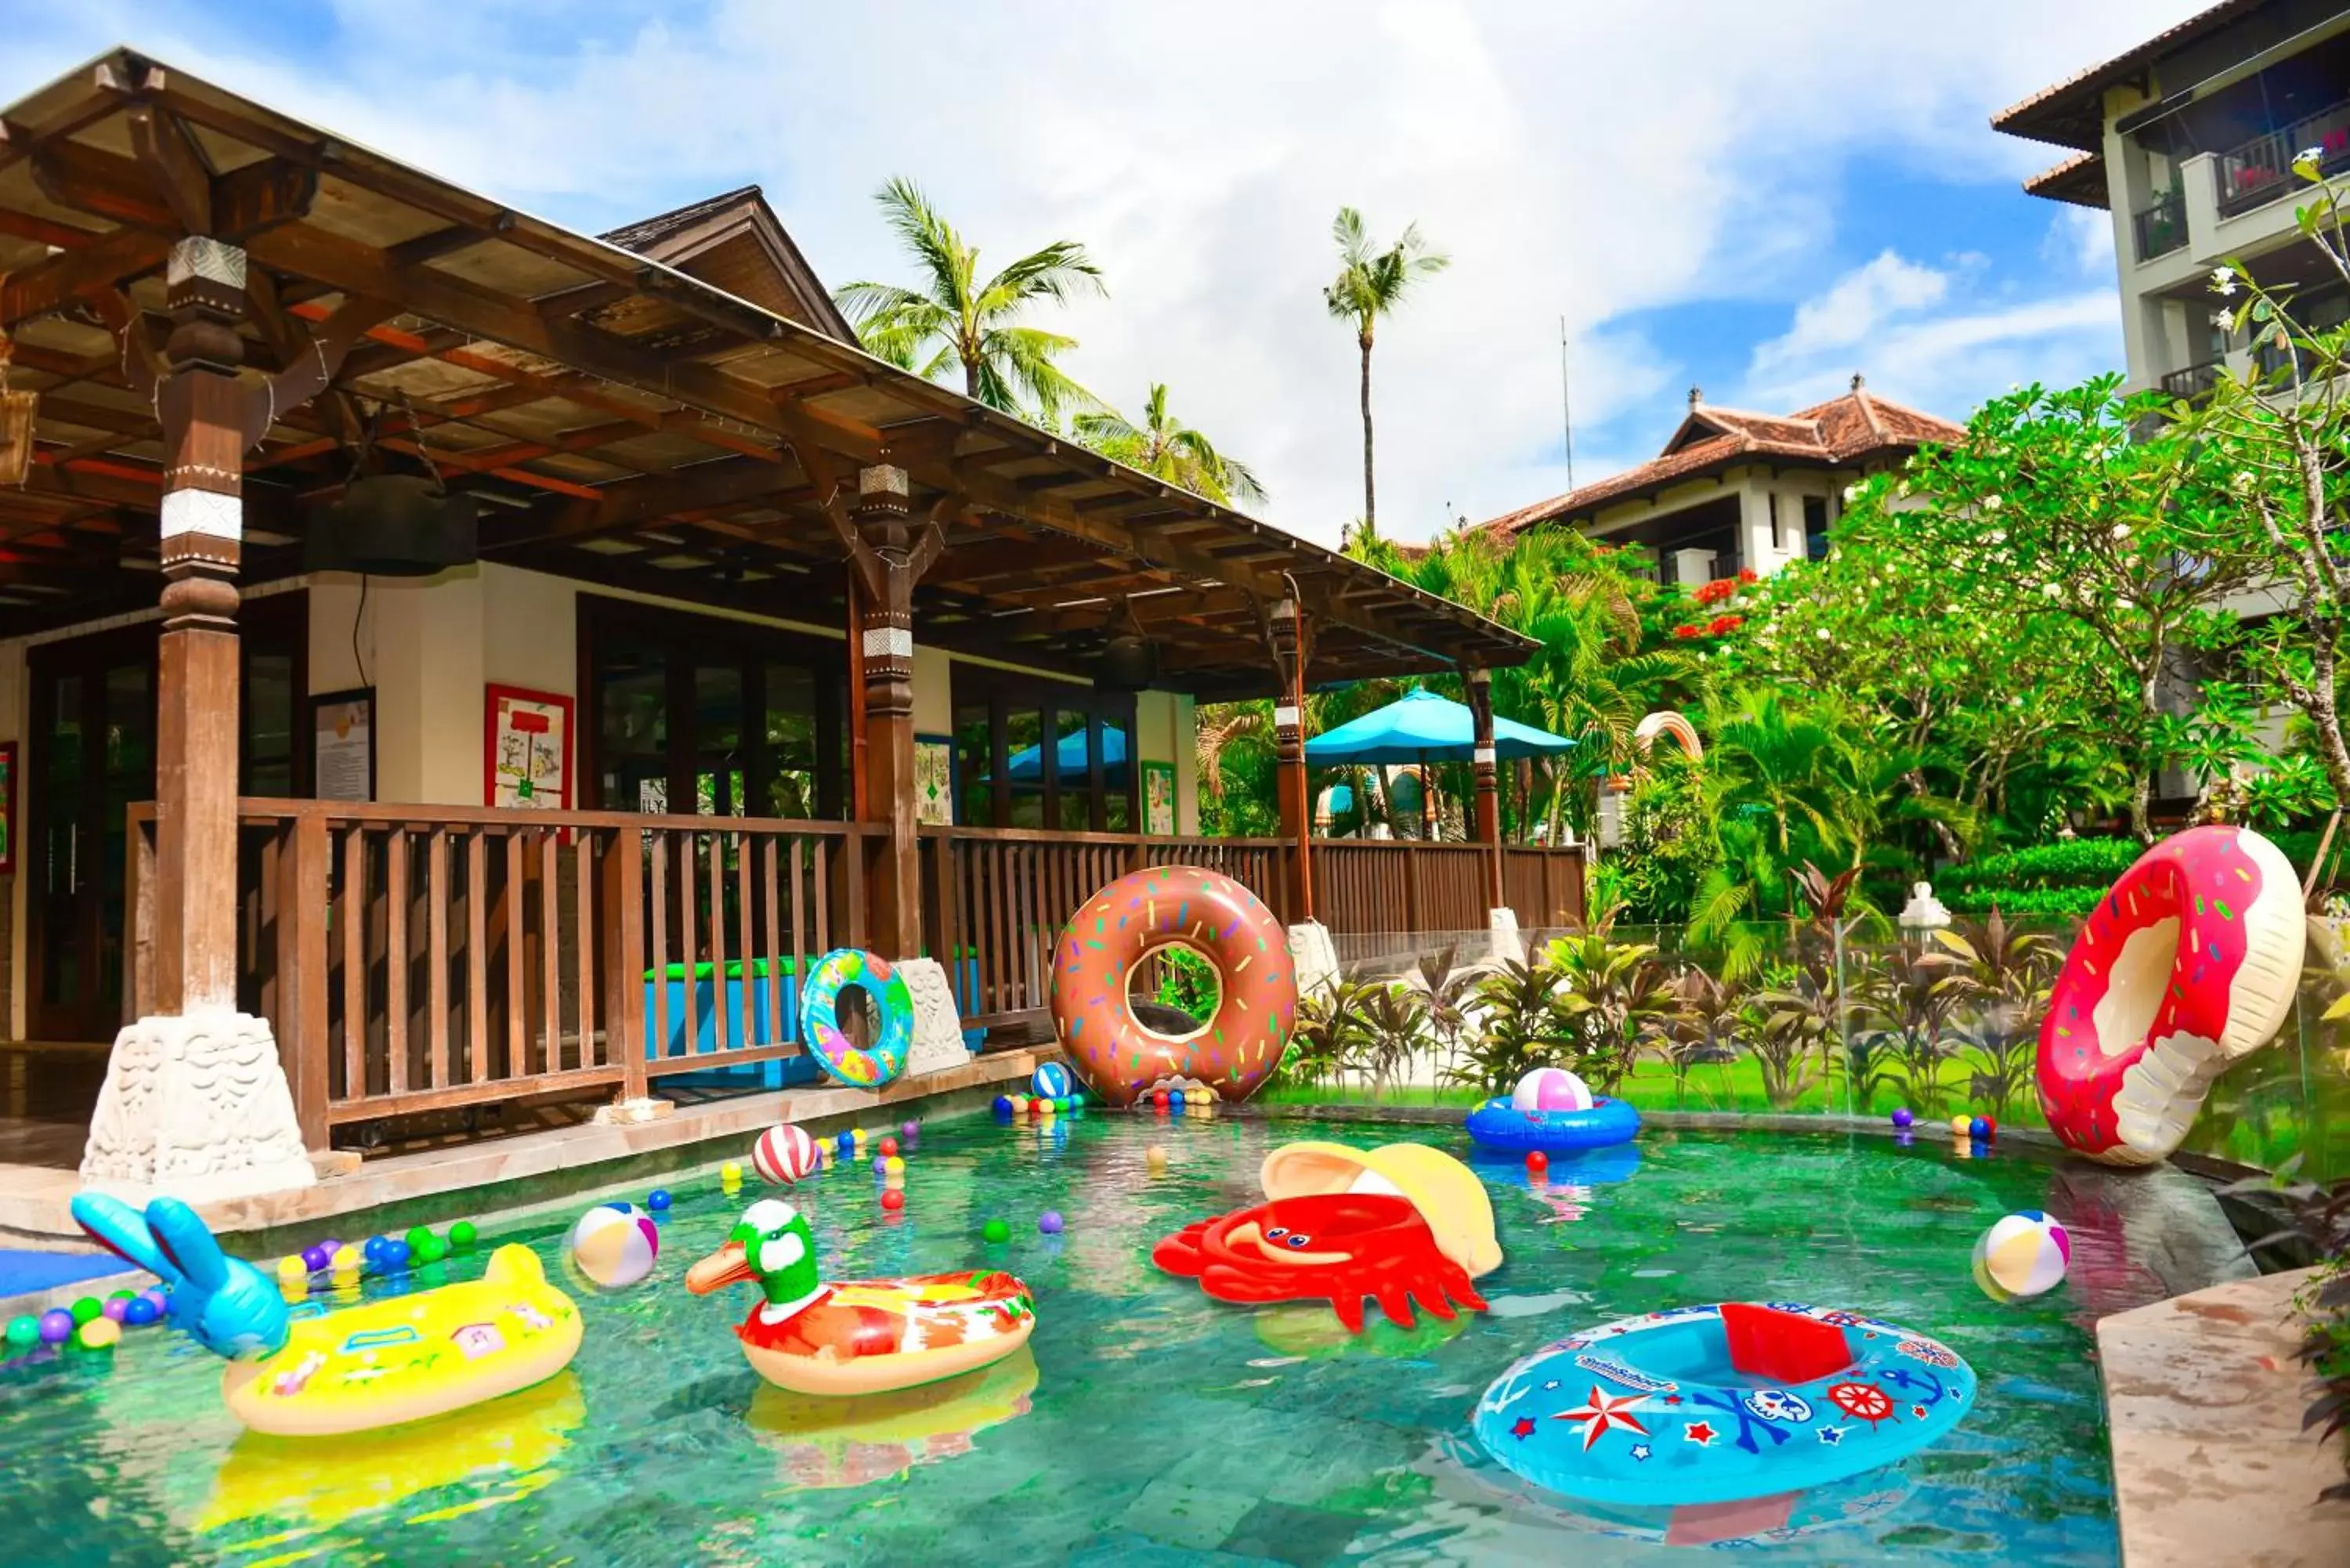 Kids's club in Novotel Bali Nusa Dua